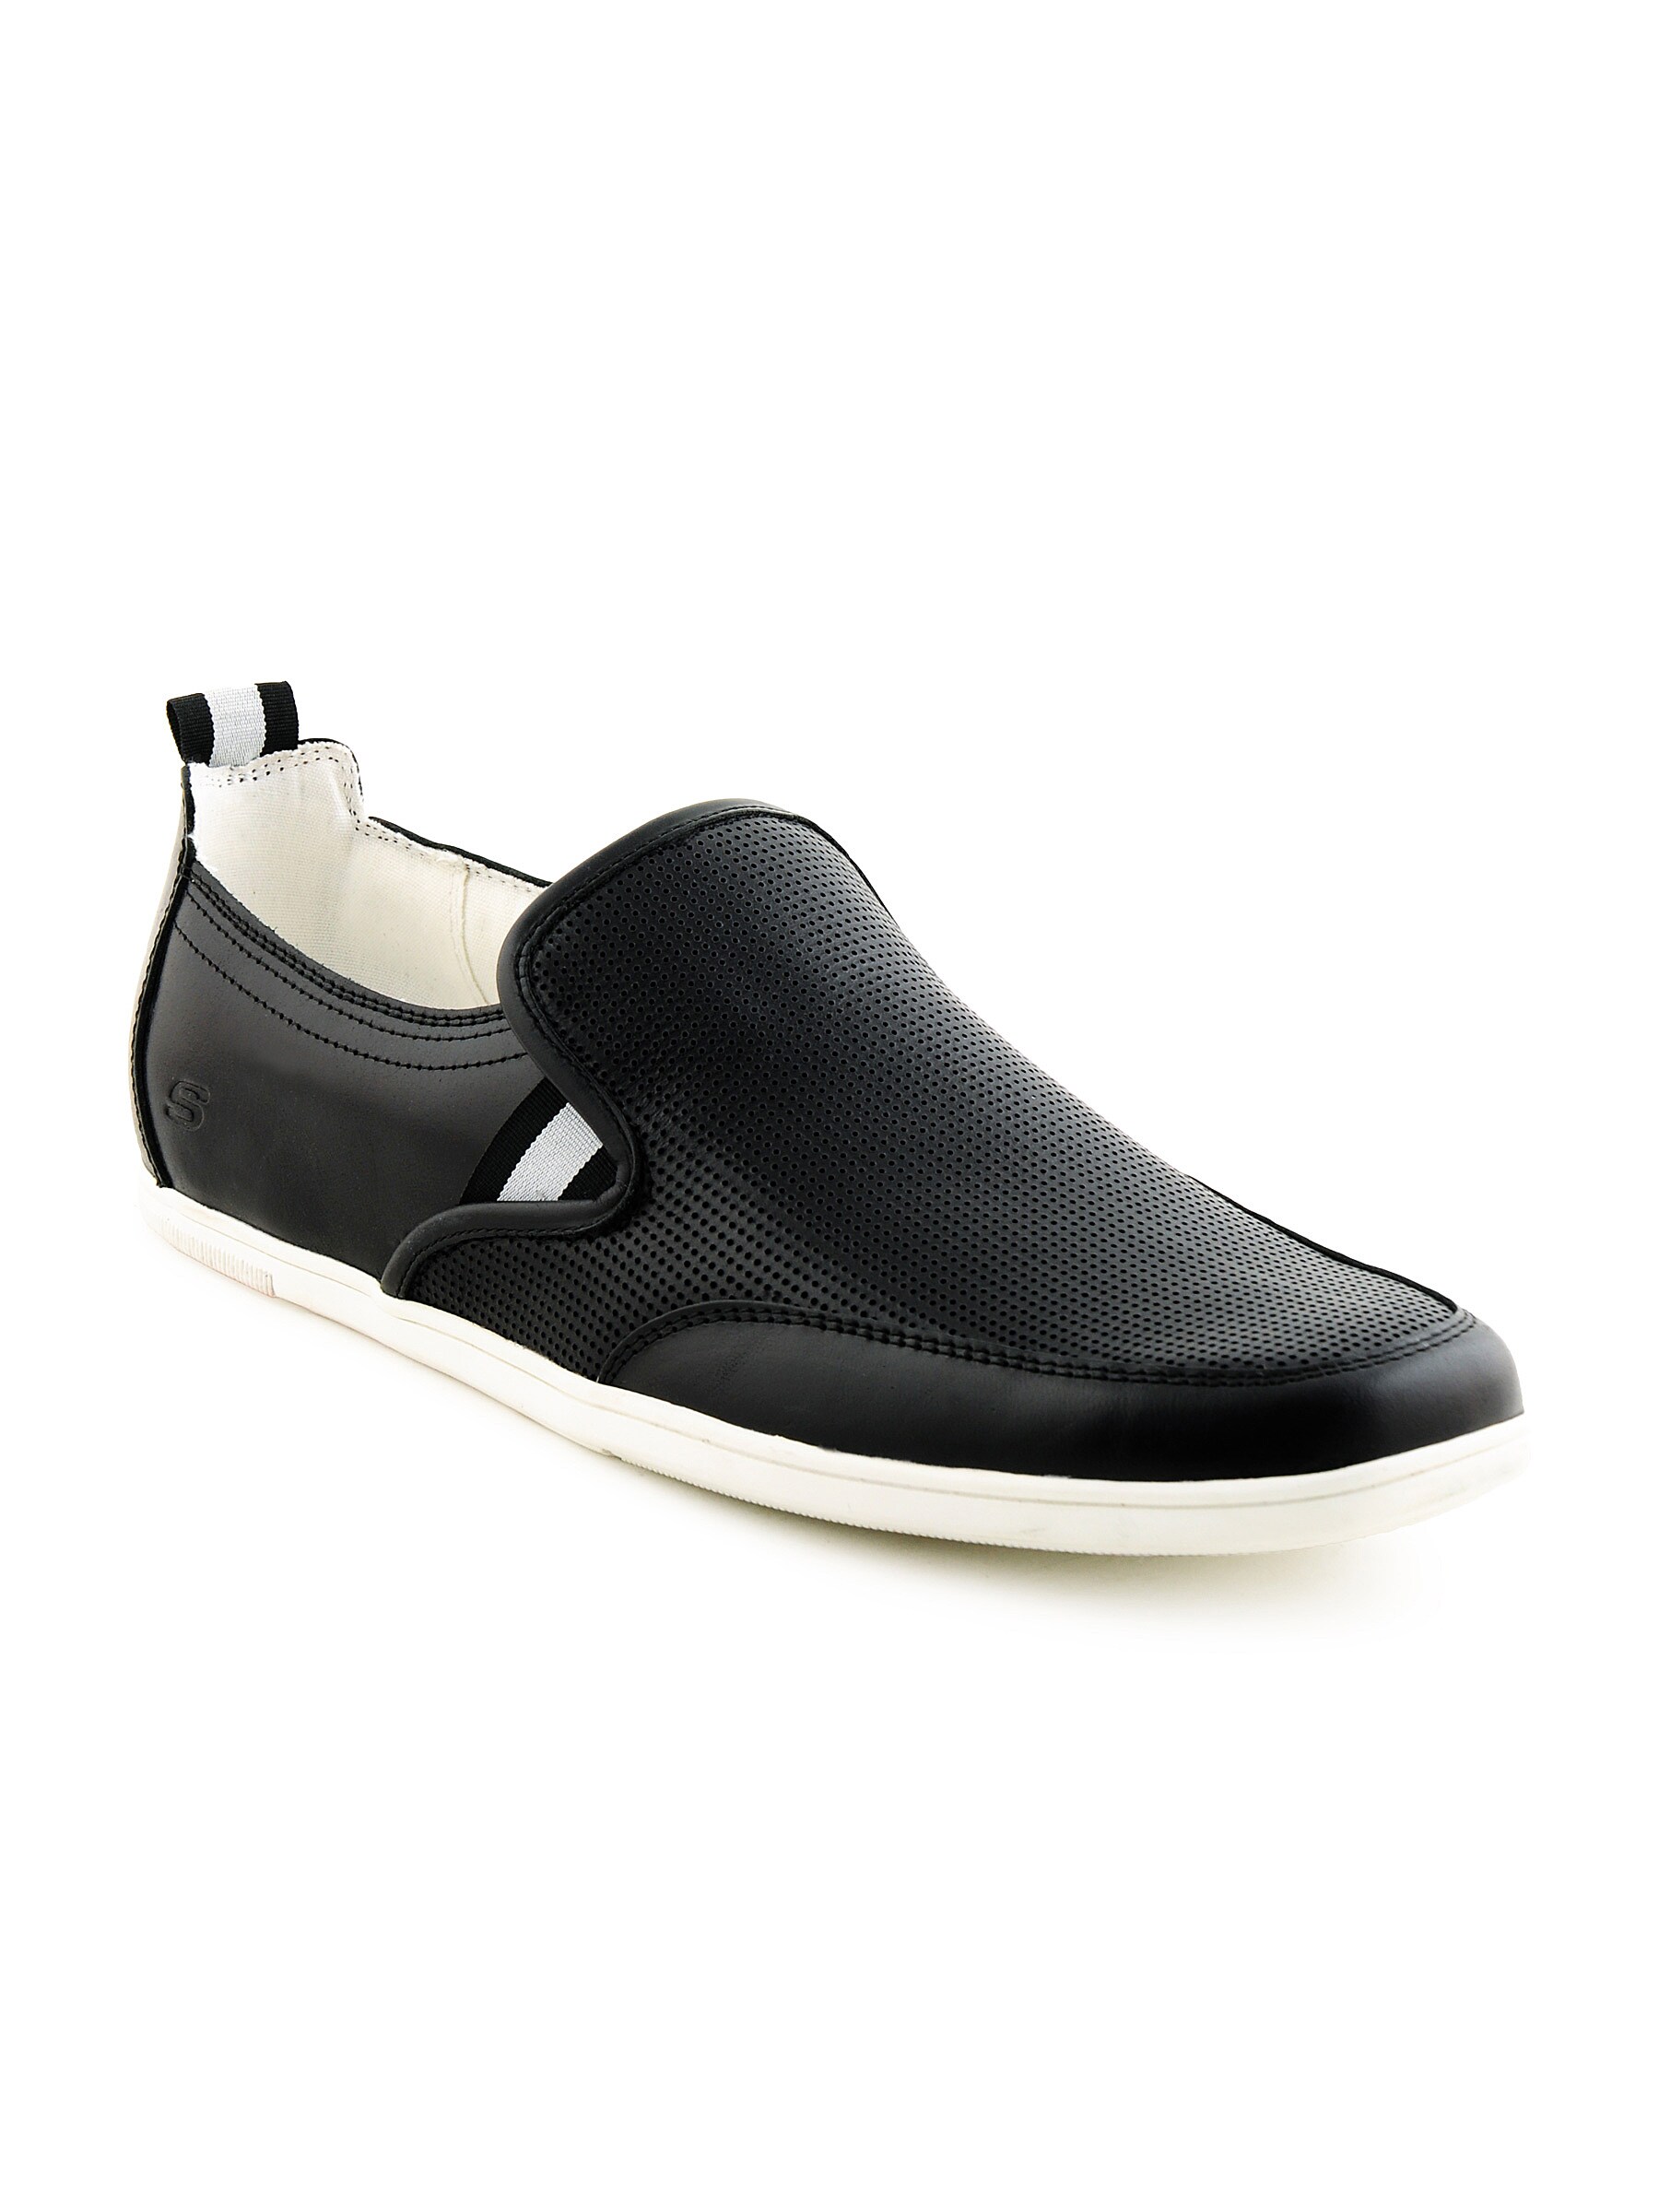 Skechers Men Casual Black Shoes